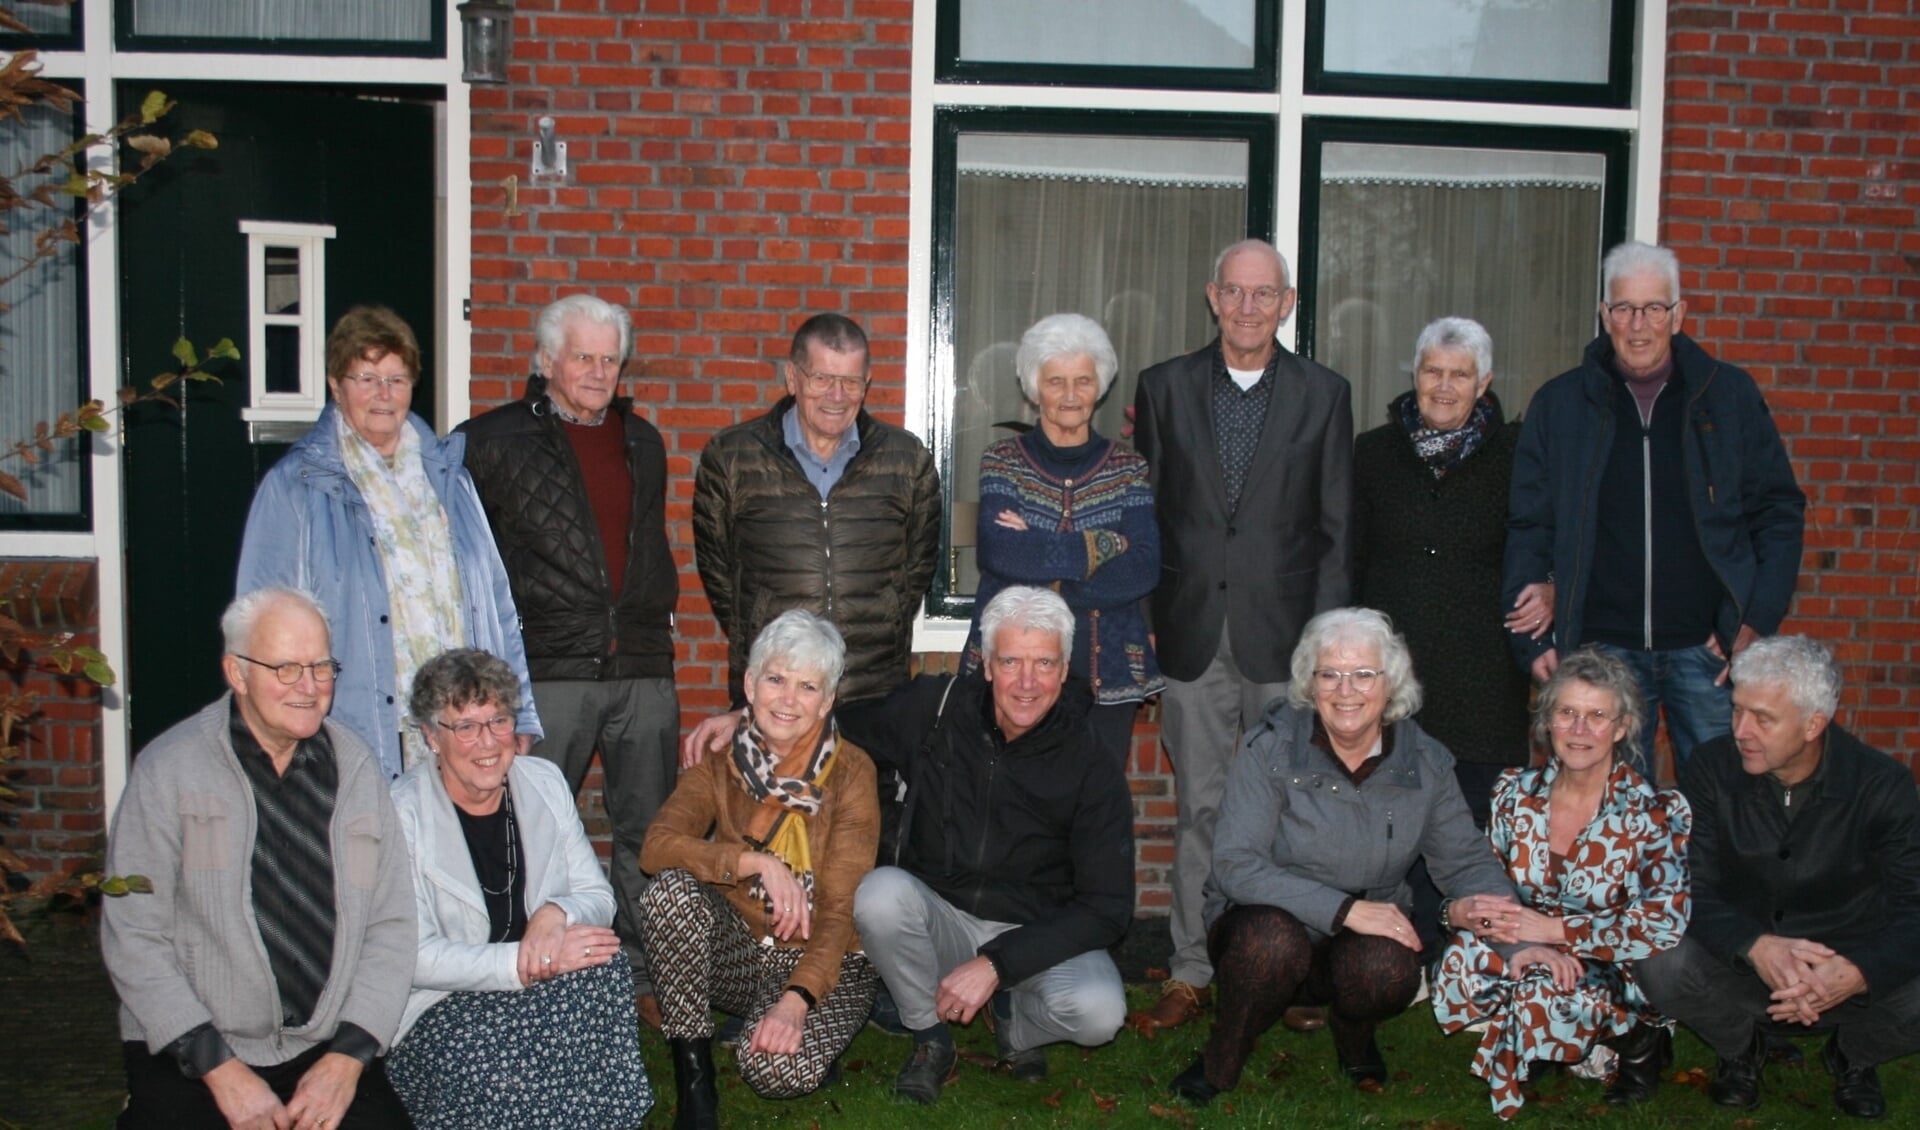 Precies 1000 jaar, dat zijn de veertien broers en zussen Pander uit Garyp. Staande v.l.n.r. Baukje (81), Hendrik (80), Albert (78), Janke (77), Karel (75), Trienke (73) en Lieuwe (72). Hurkend v.l.n.r. Aan (70), Anneke (69), Jantsje (67), Eelke (66), Sjoukje (63), Jeltje (62) en Pieter (60)